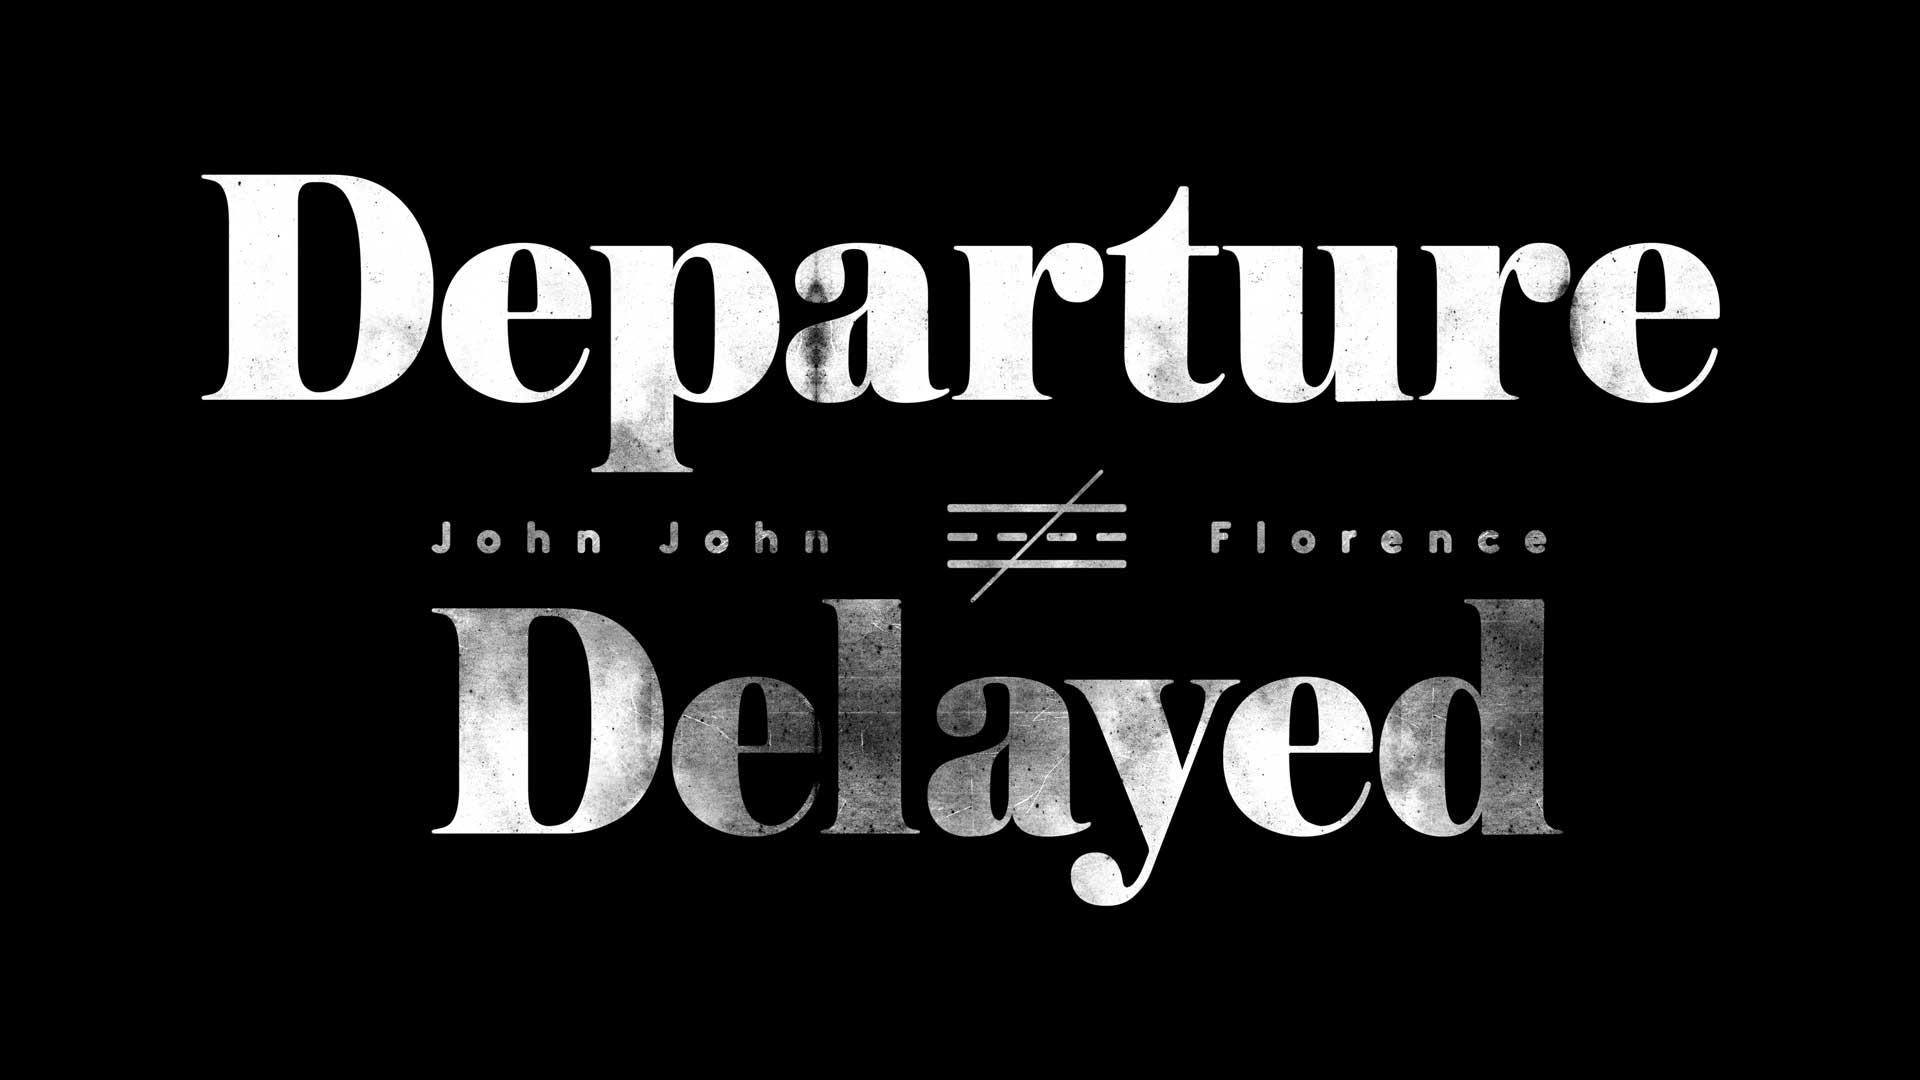 John John Florence — “Departure Delayed”